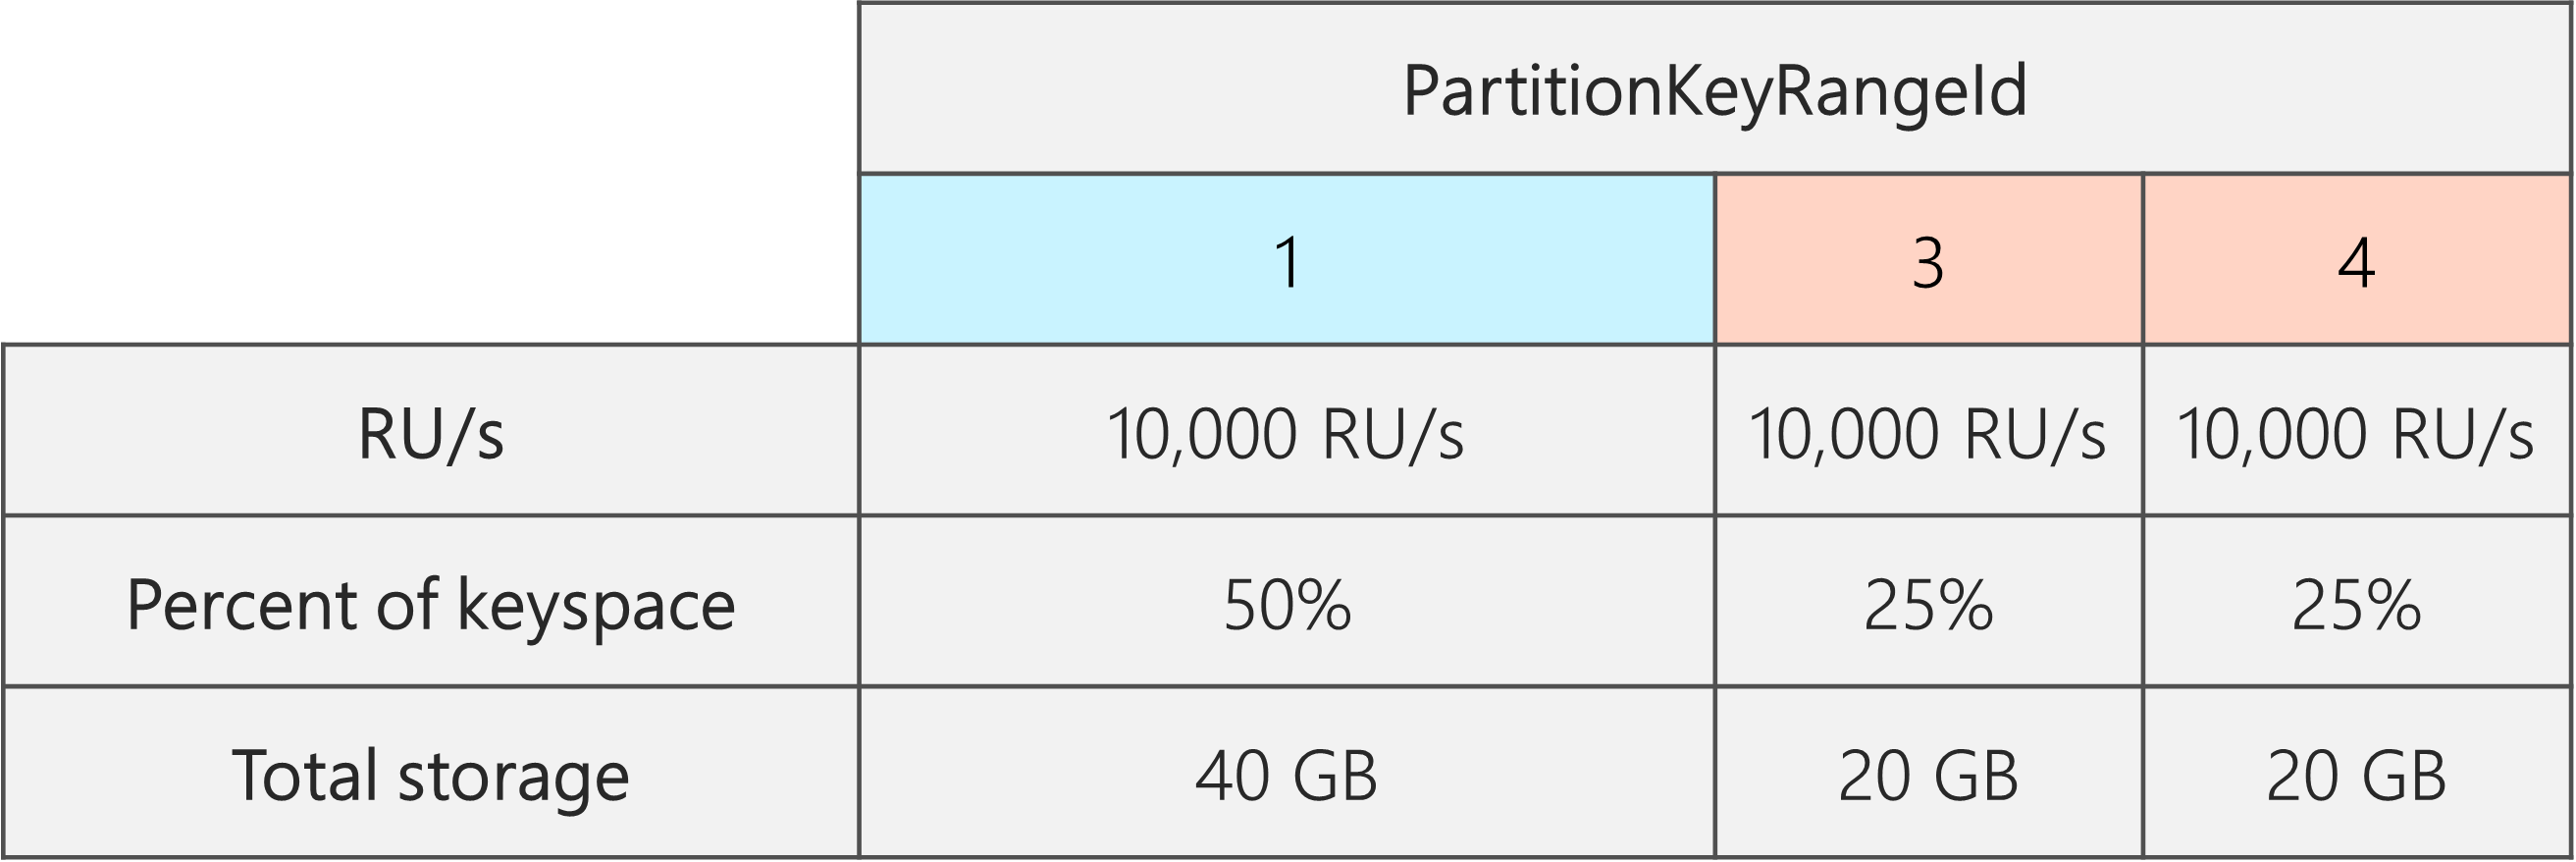 Setelah pemisahan, ada 3 PartitionKeyRangeIds, masing-masing dengan 10.000 RU. Namun, salah satu PartitionKeyRangeIds memiliki 50% dari total keyspace (40 GB), sementara dua dari PartitionKeyRangeIds memiliki 25% dari total keyspace (20 GB)